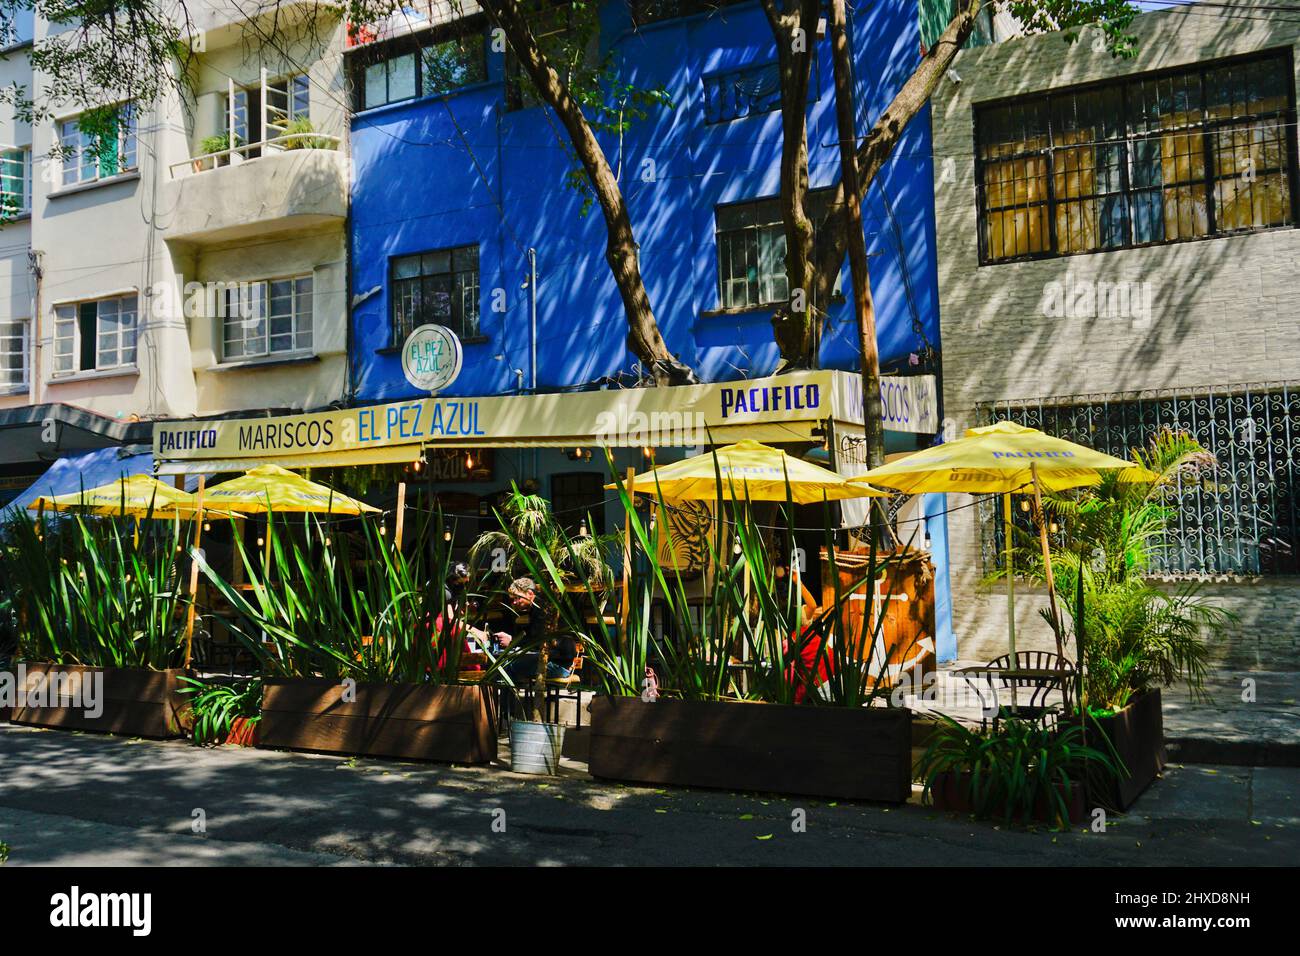 El Pez Azul seafood restaurant, Hipodromo neighborhood, in the Cuauhtemoc area, Ciudad de Mexico, CDMX Stock Photo